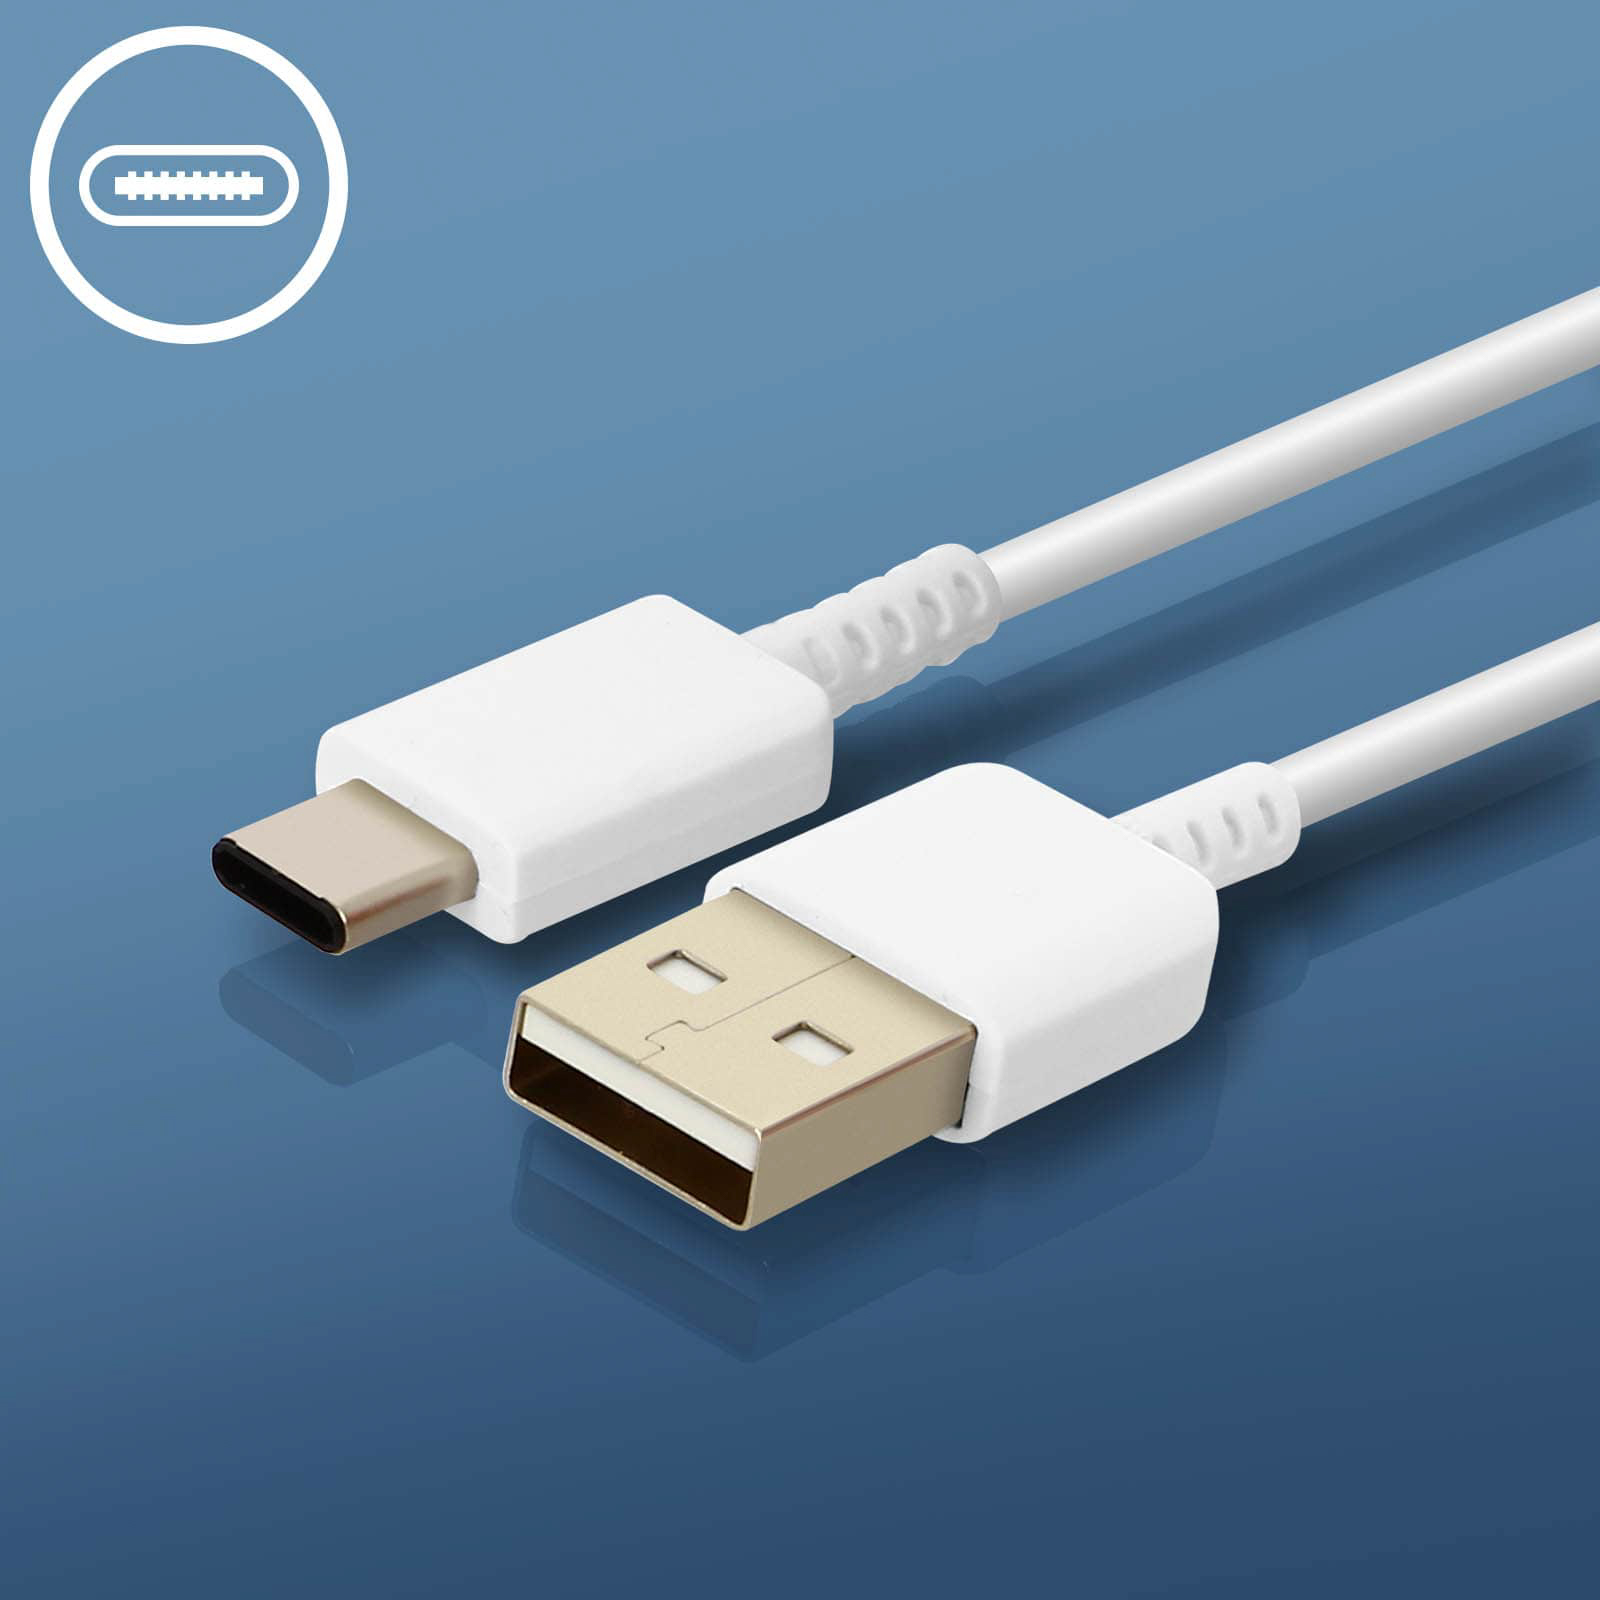 SAMSUNG Netzteil, 2A Samsung, USB Weiß Netzteile Wand-Ladegerät